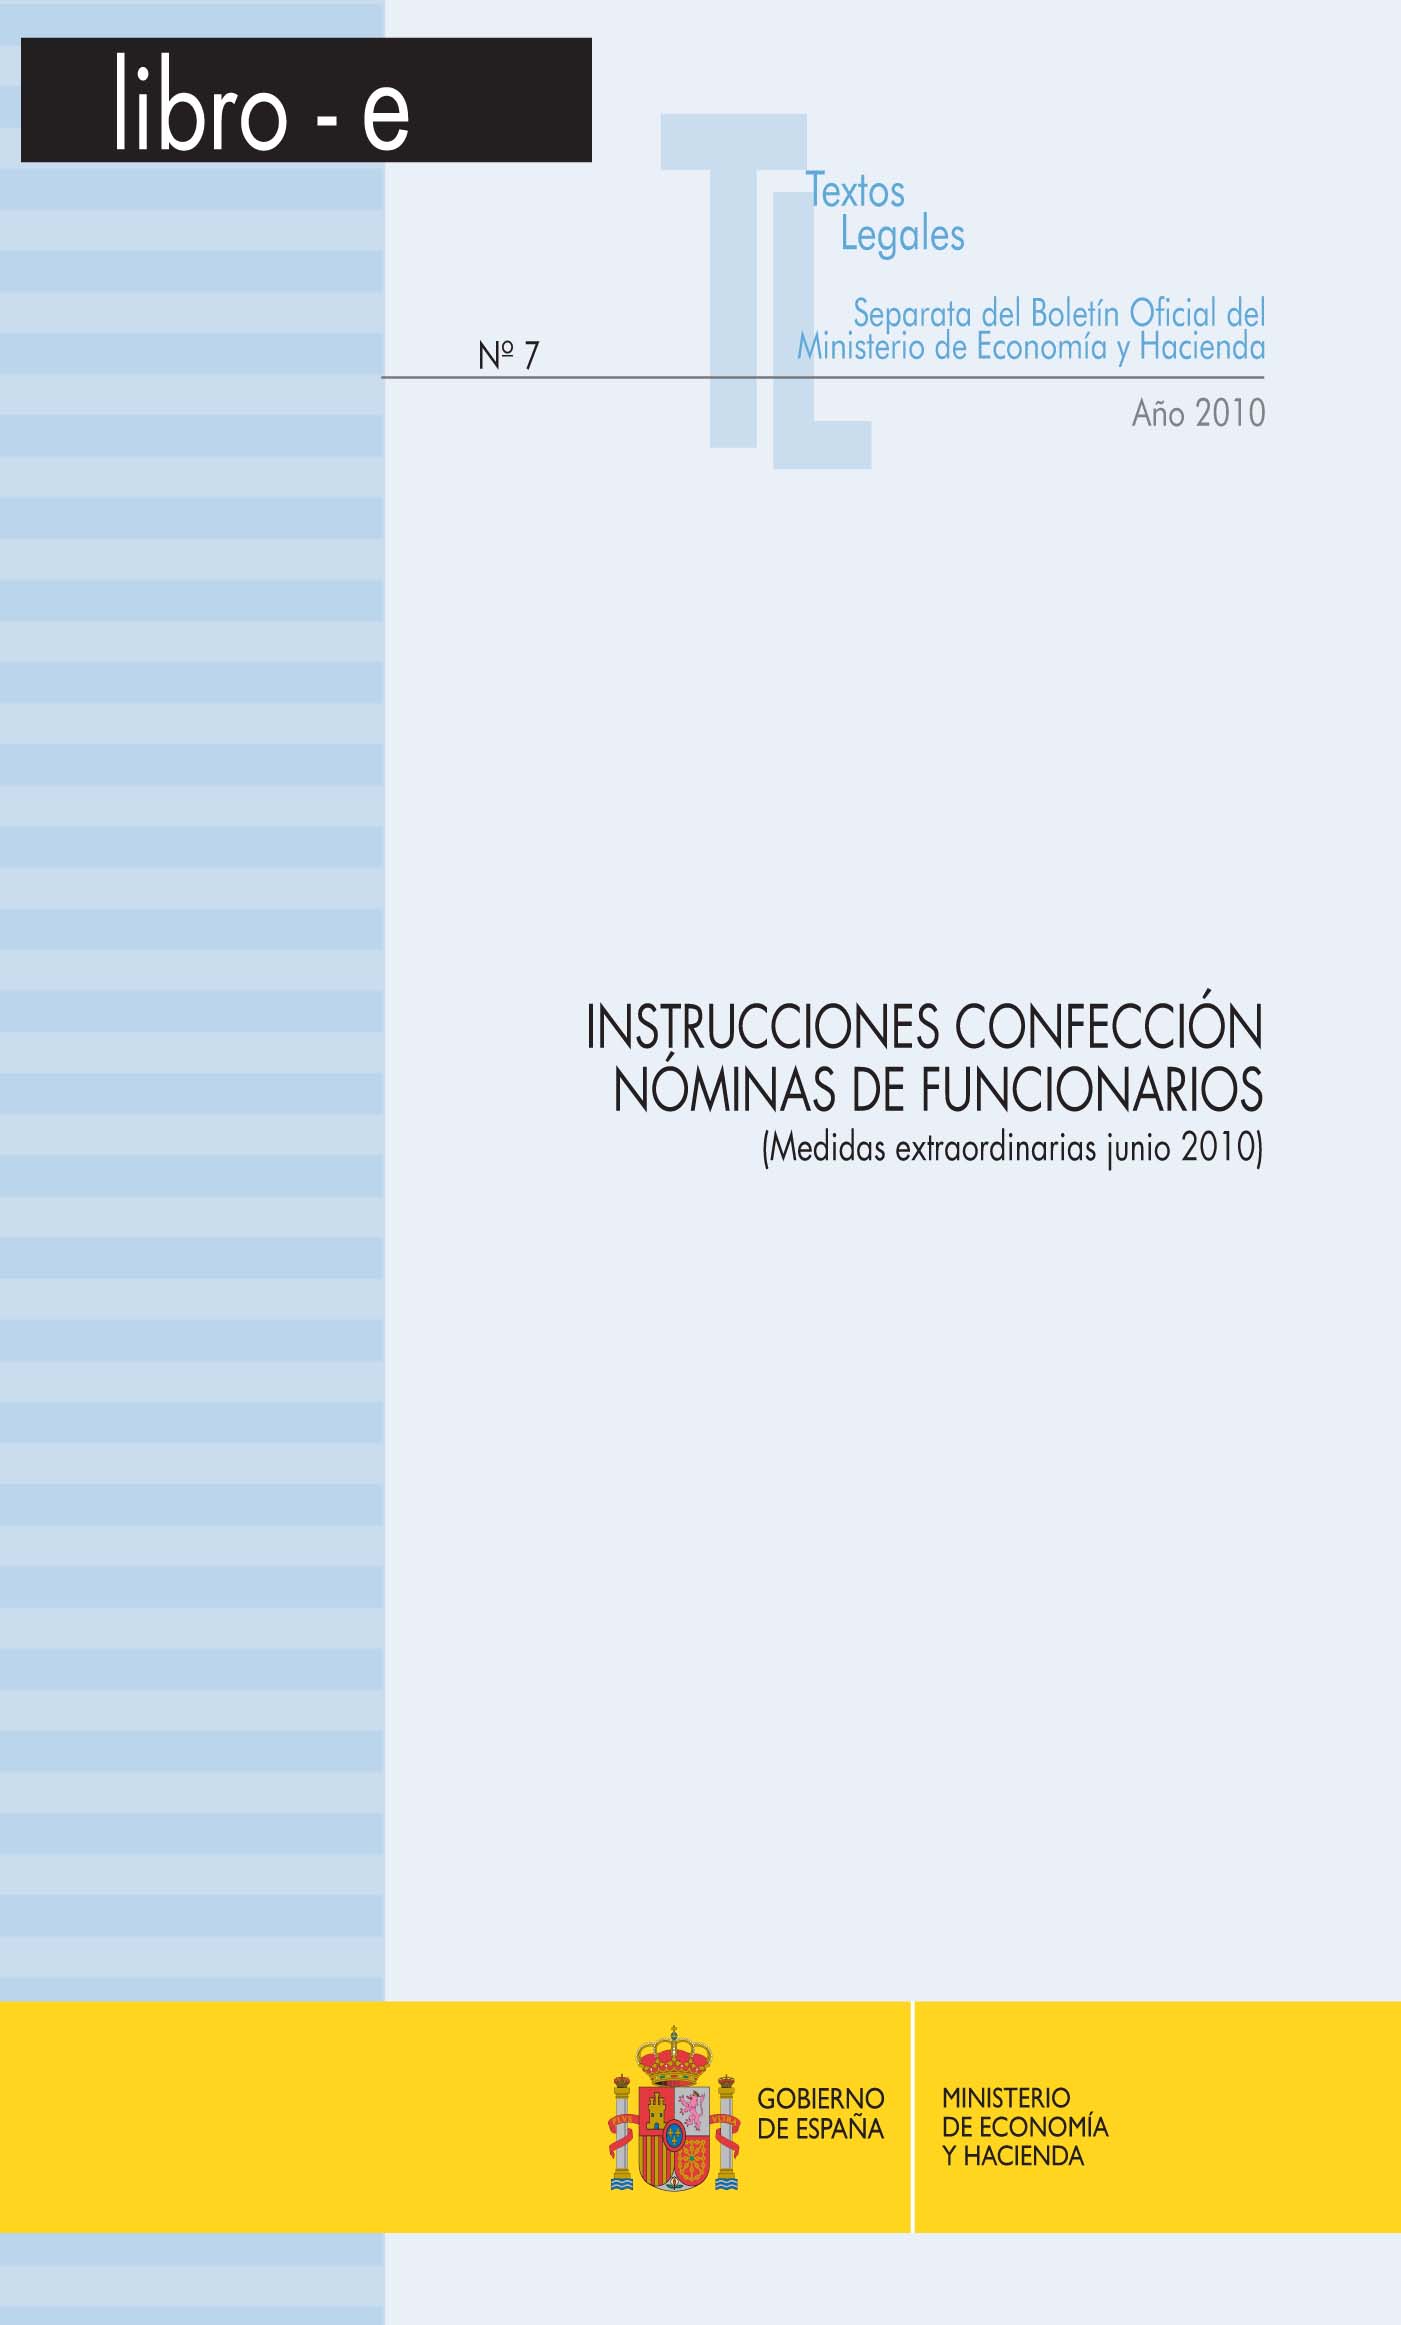 Portada del libro: INSTRUCCIONES CONFECCION NOMINAS DE FUNCIONARIOS (MEDIDAS EXTRAORDINARIAS JUNIO 2010) Libro-e